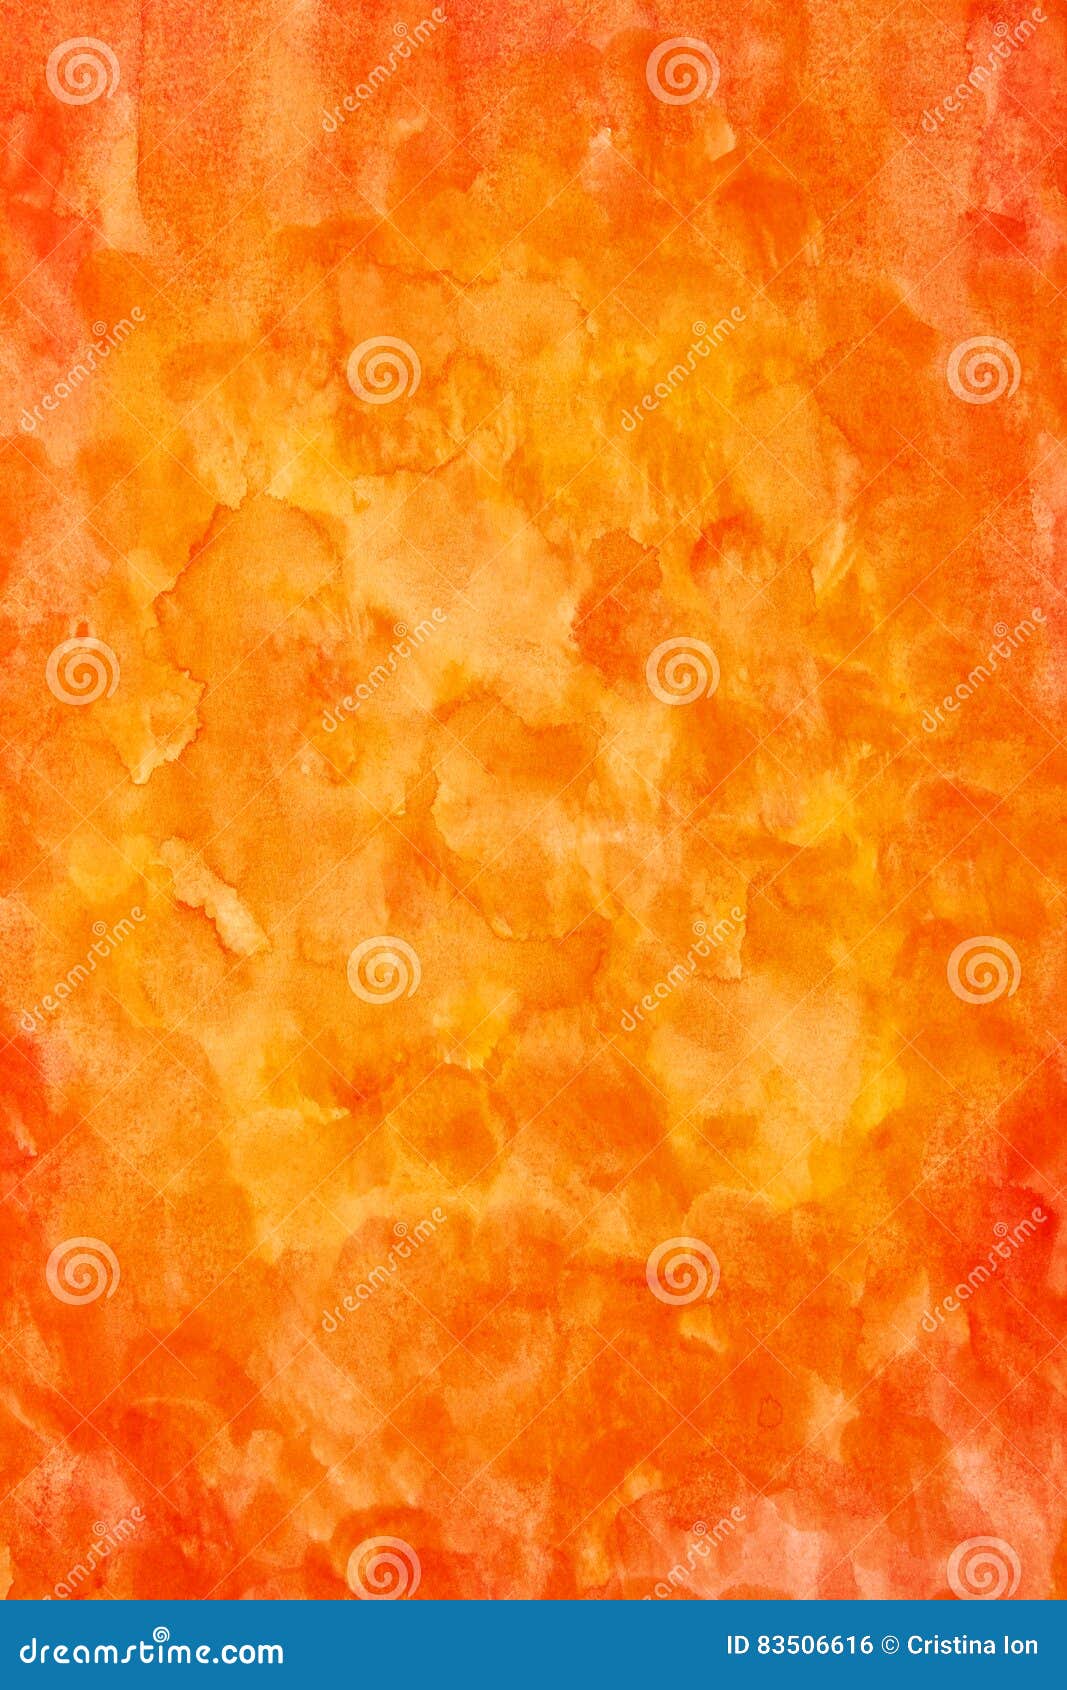 Bạn đã bao giờ muốn tìm hiểu về màu cam trừu tượng nước sơn dọc chưa? Hãy xem hình ảnh liên quan và cảm nhận sự tươi mới, tinh tế của màu sắc này. Nét khác biệt sẽ khiến bạn thích thú đấy!